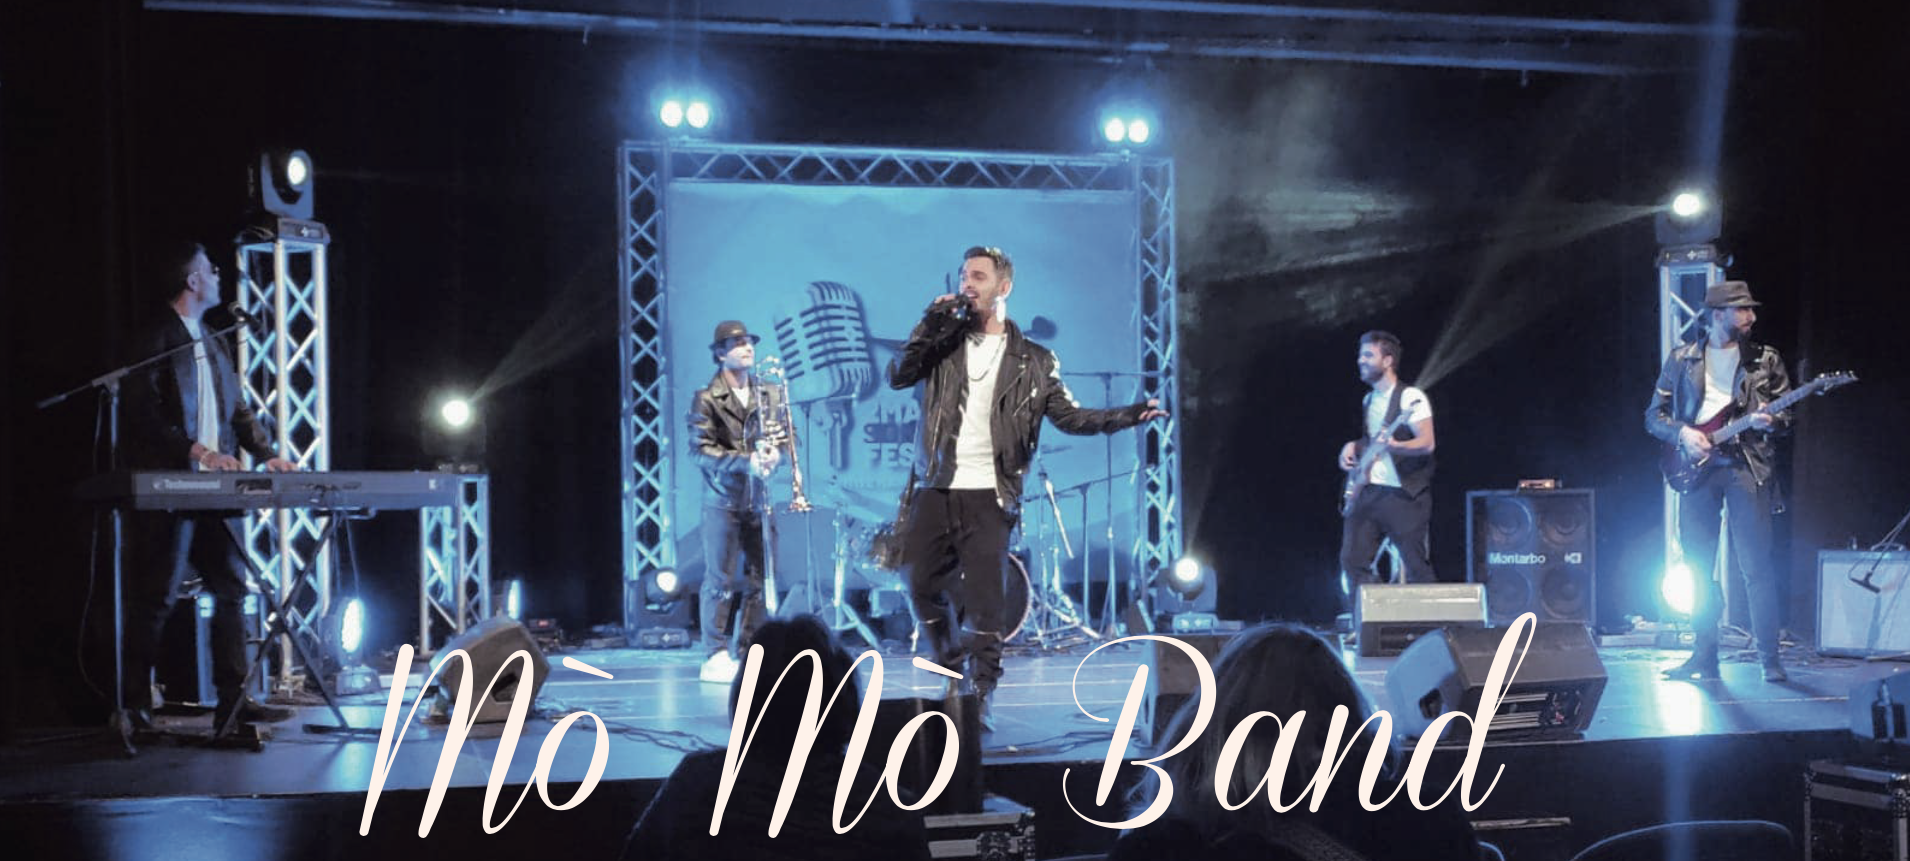 La Mò Mò Band a Sanremo Rock e Trend – 35^ edizione